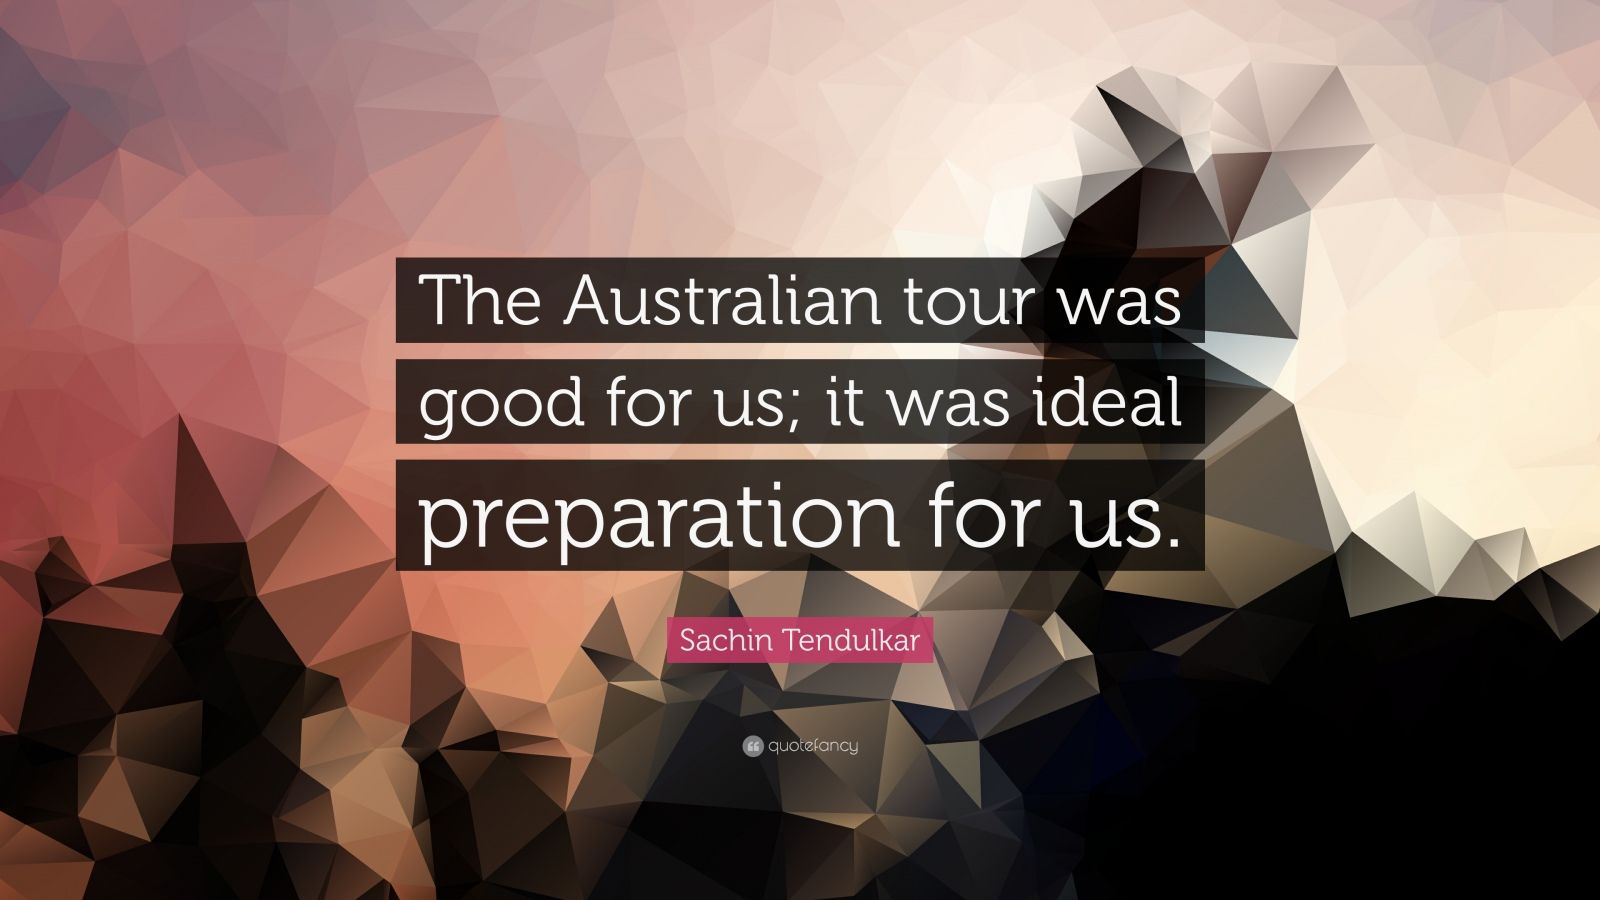 The Australian tour